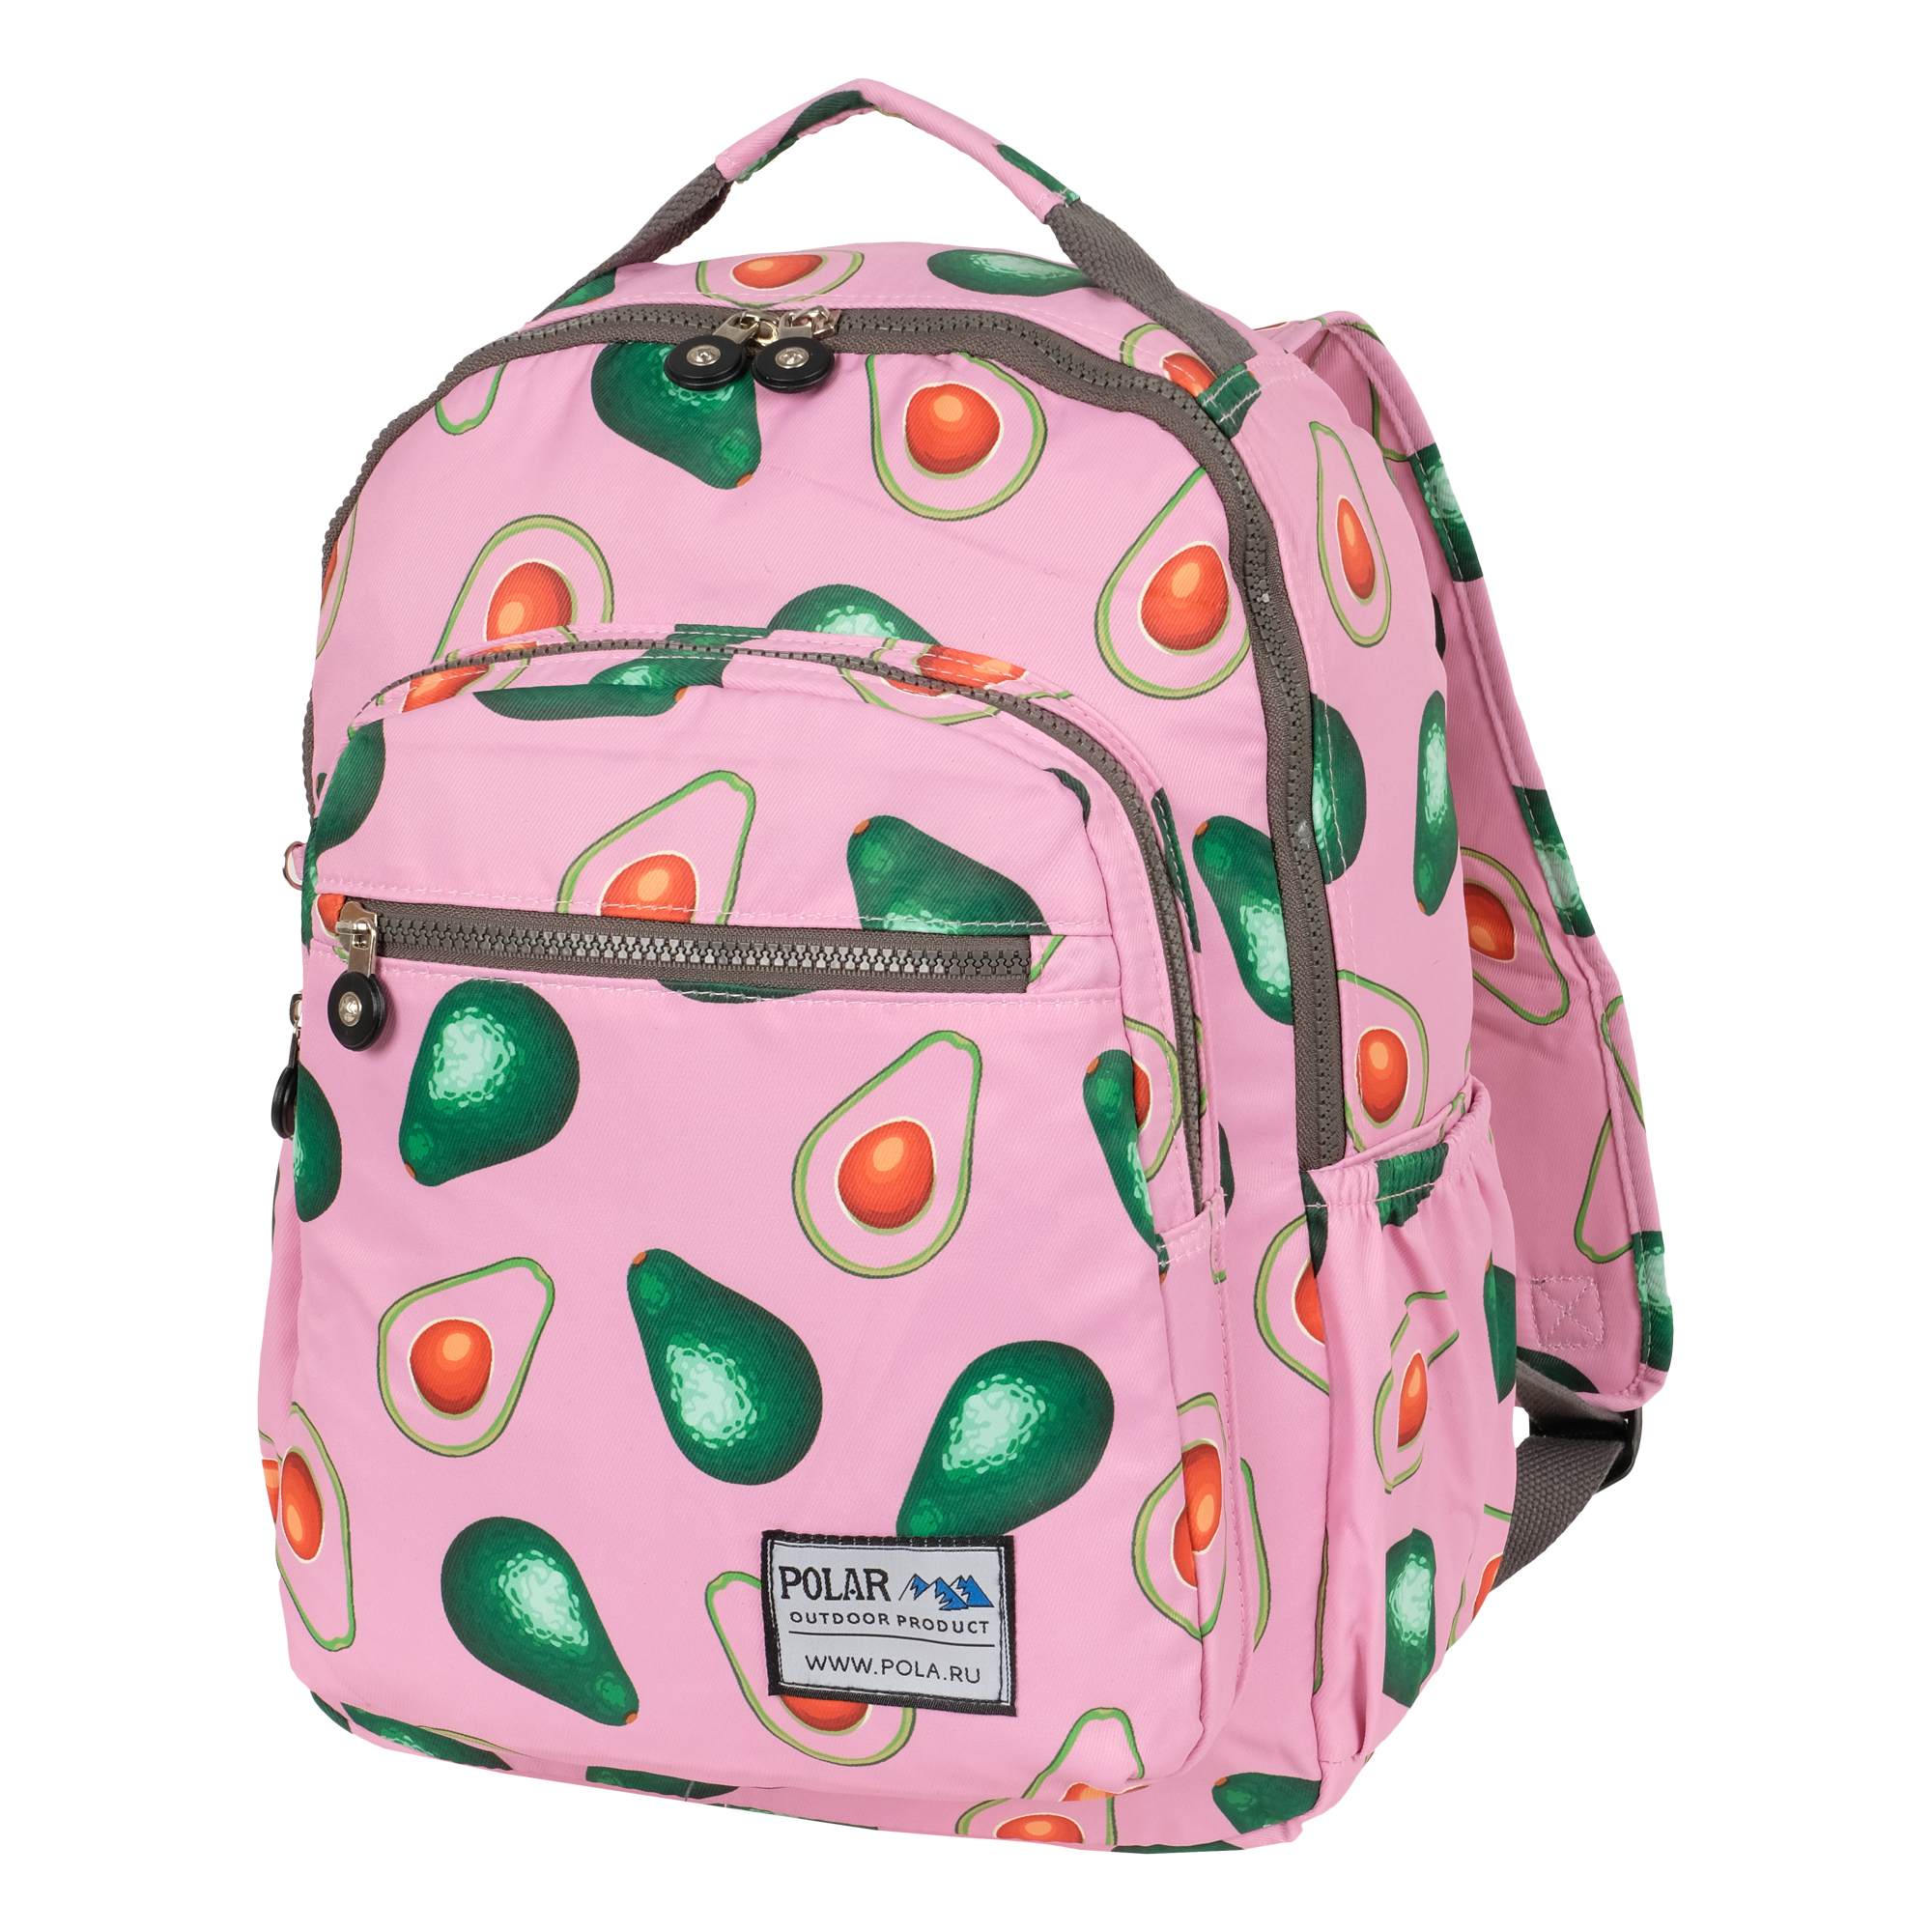 Рюкзак унисекс Polar П8100-2 ярко-розовый, 29х38х11 см